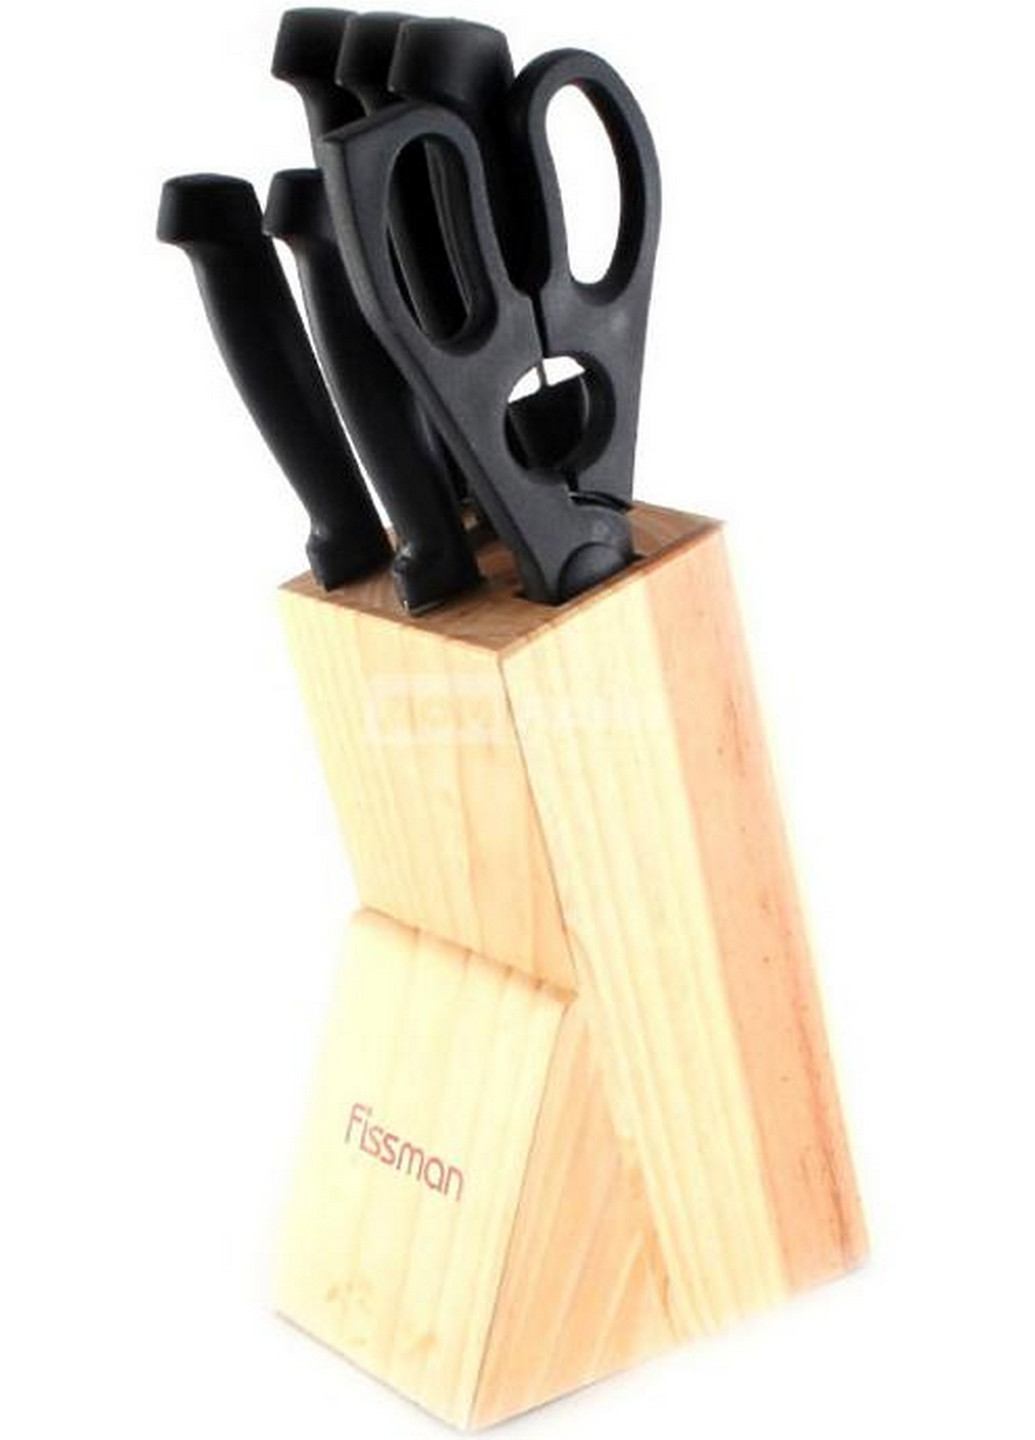 Набор кухонных ножей Centrum 7 предметов 20 см, 20 см, 20 см, 12 см, 9 см Fissman (267150199)